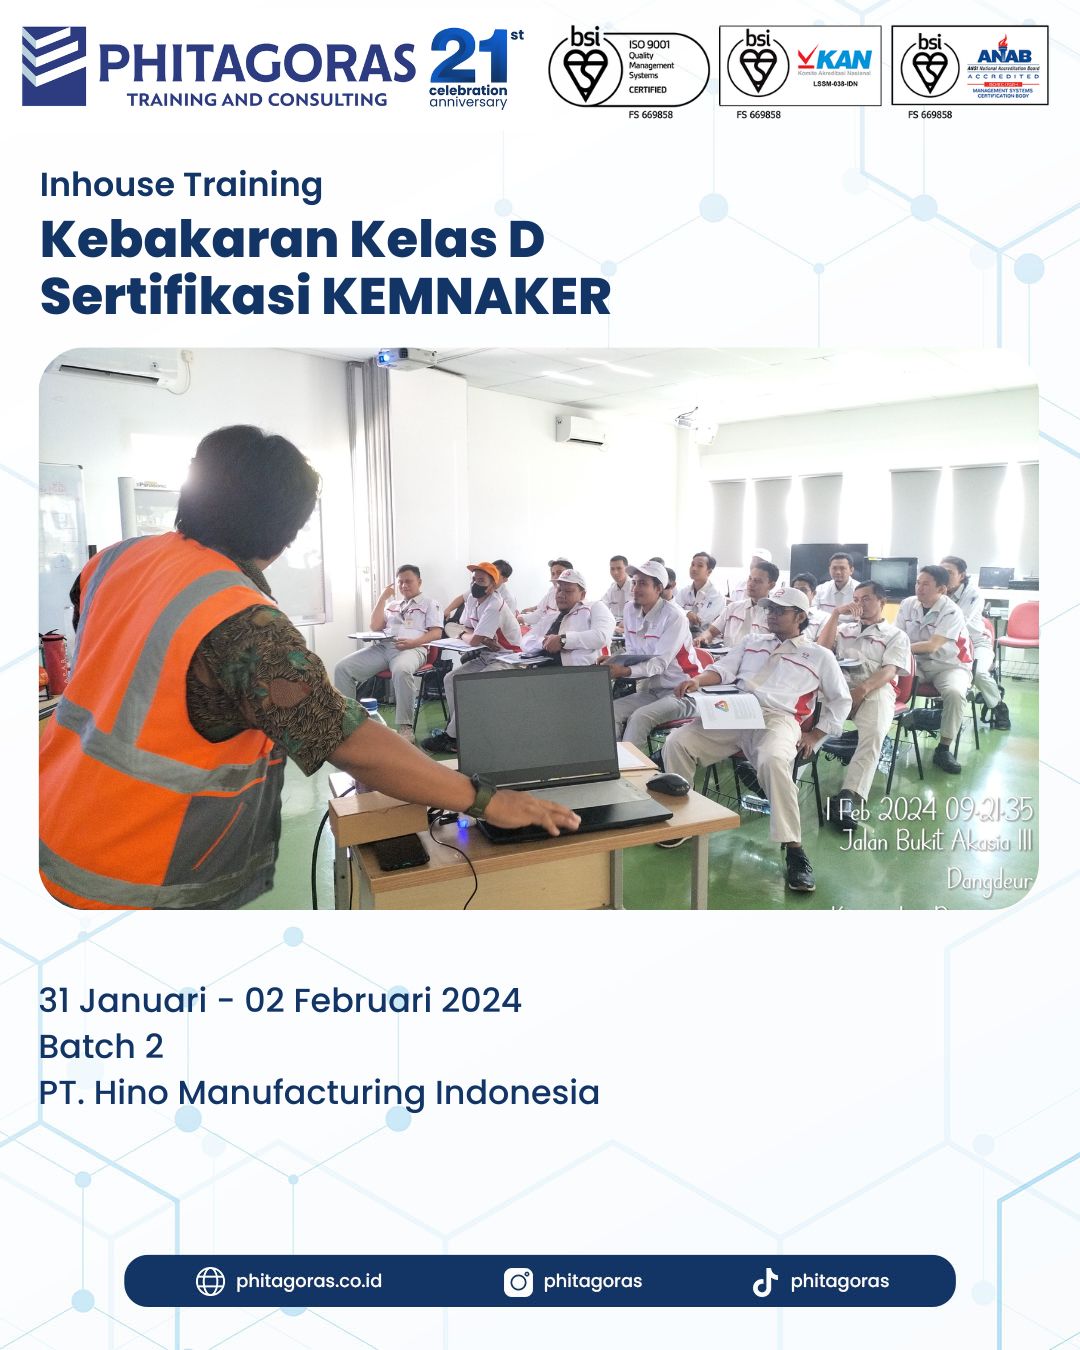 Inhouse Training Kebakaran Kelas D Sertifikasi KEMNAKER - PT. Hino Manufacturing Indonesia Batch 2